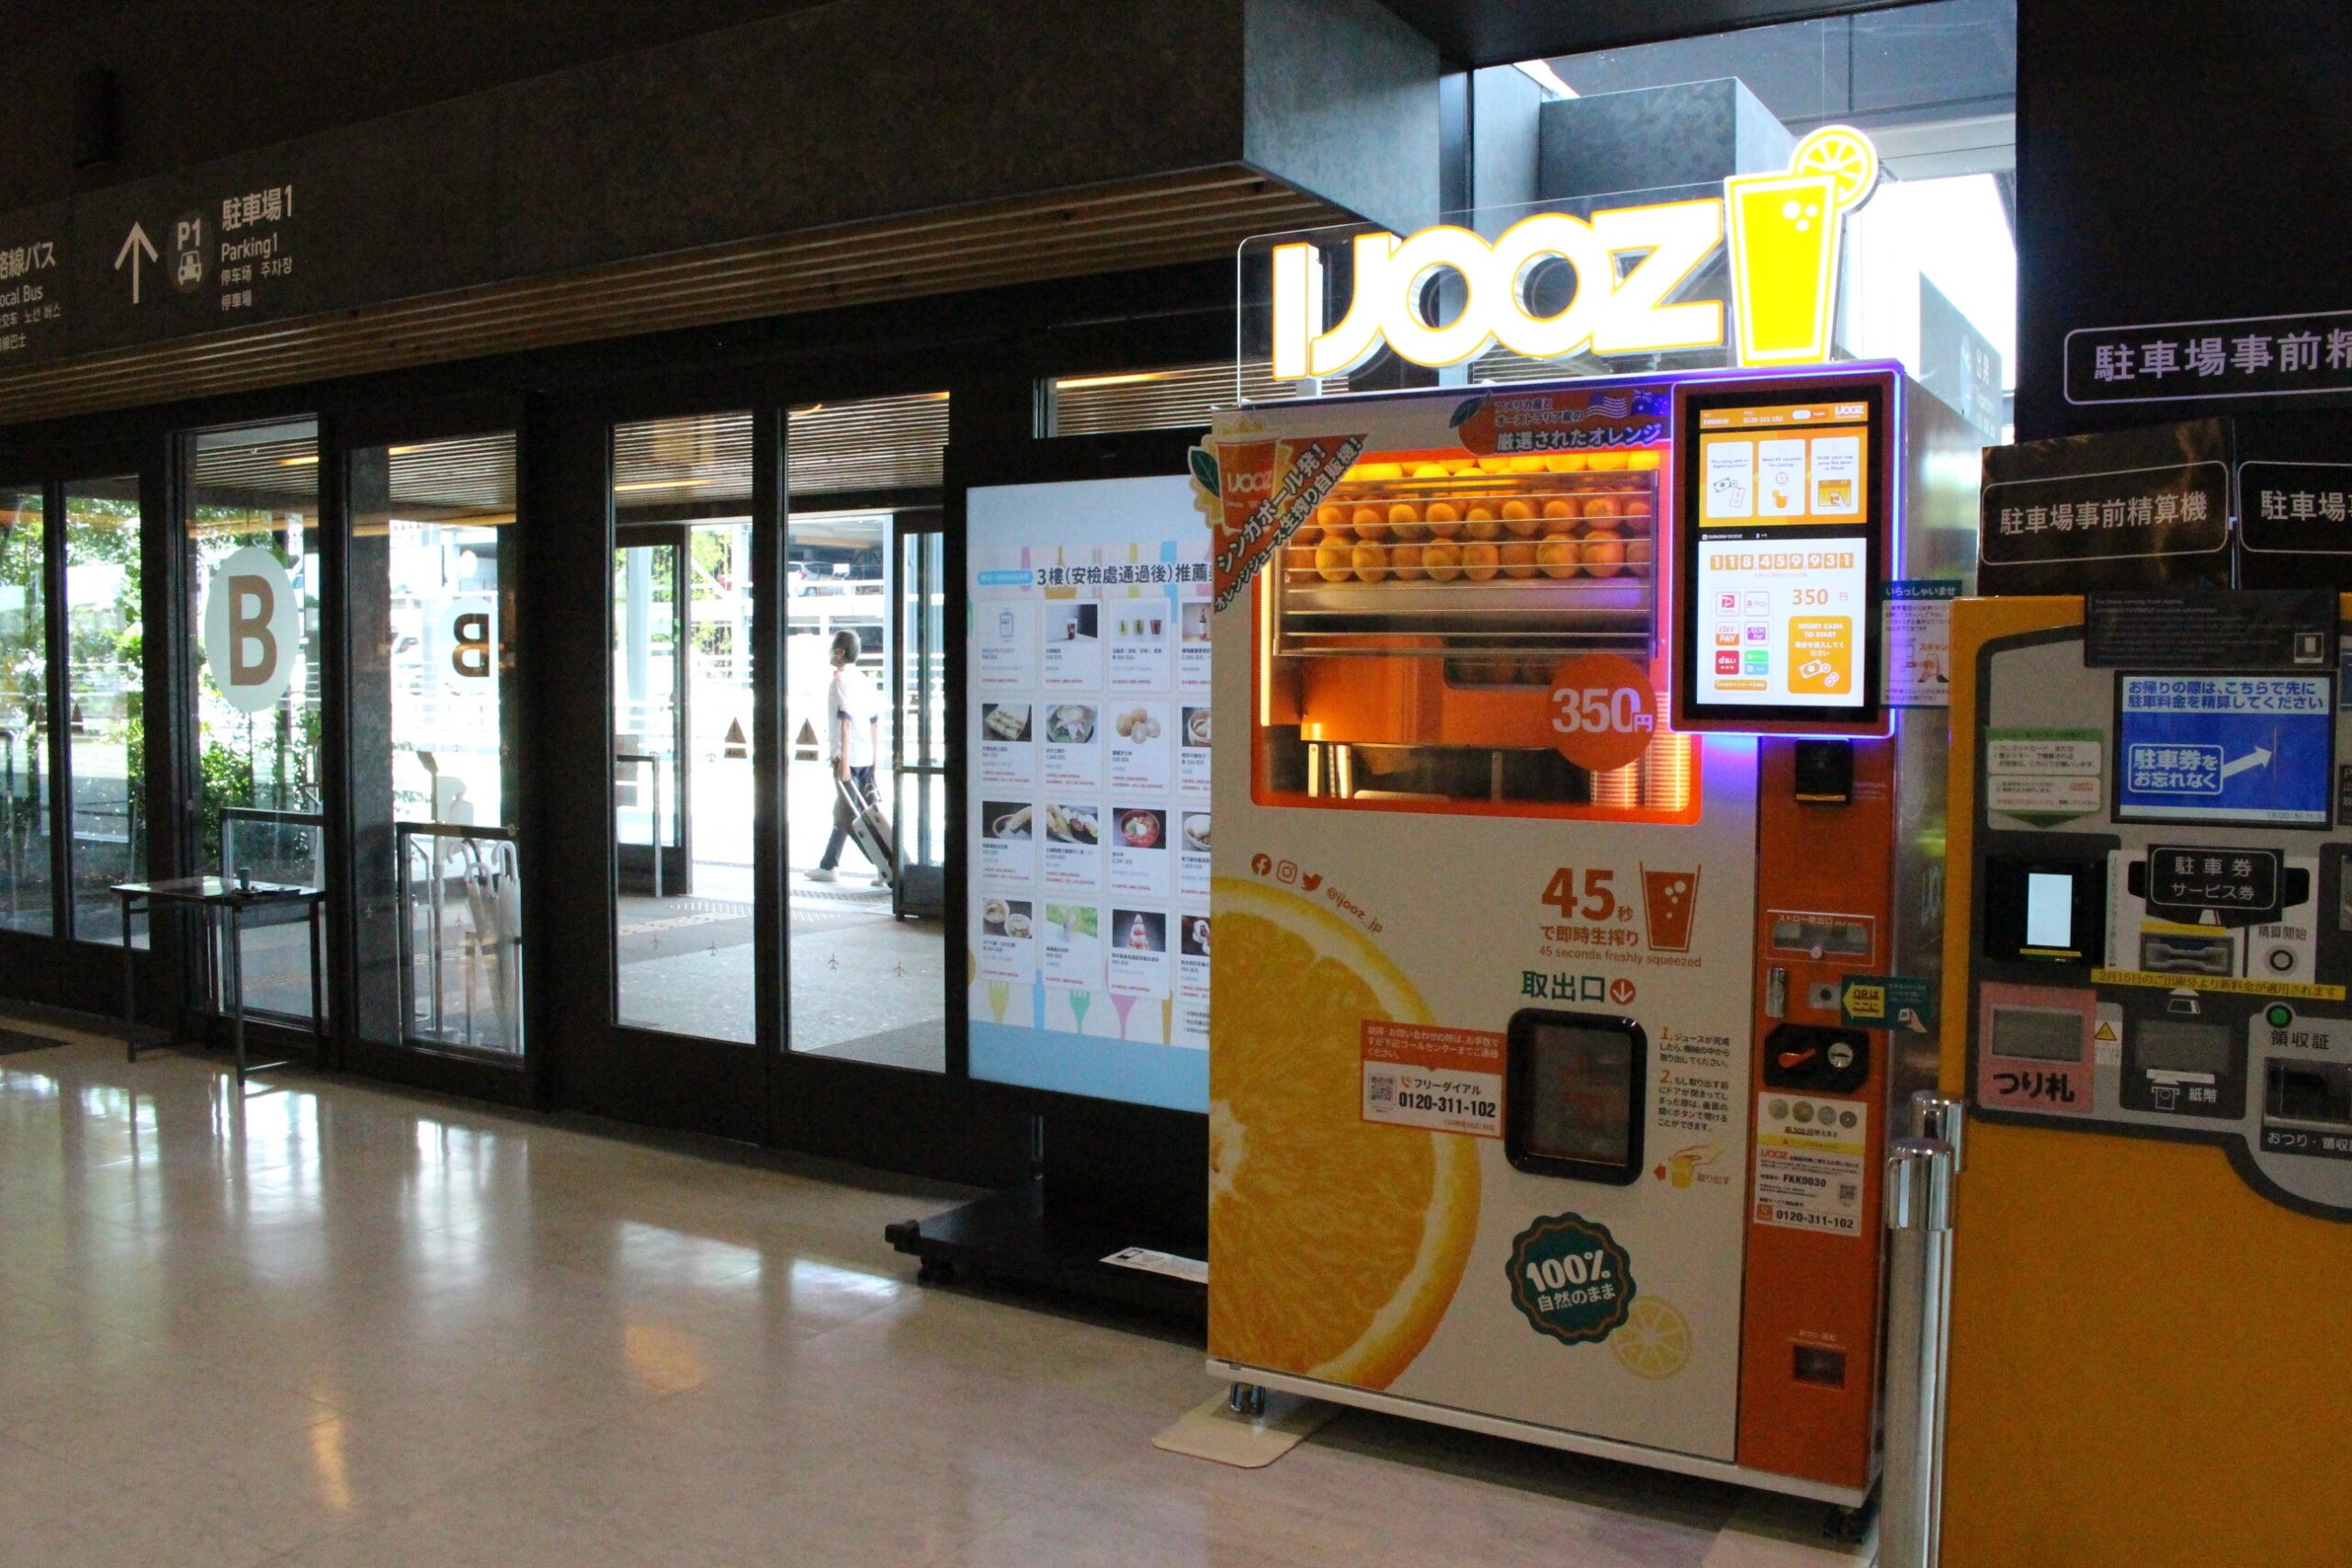 熊本初となる生搾りオレンジジュース自販機「IJOOZ」 阿蘇くまもと空港で稼働開始